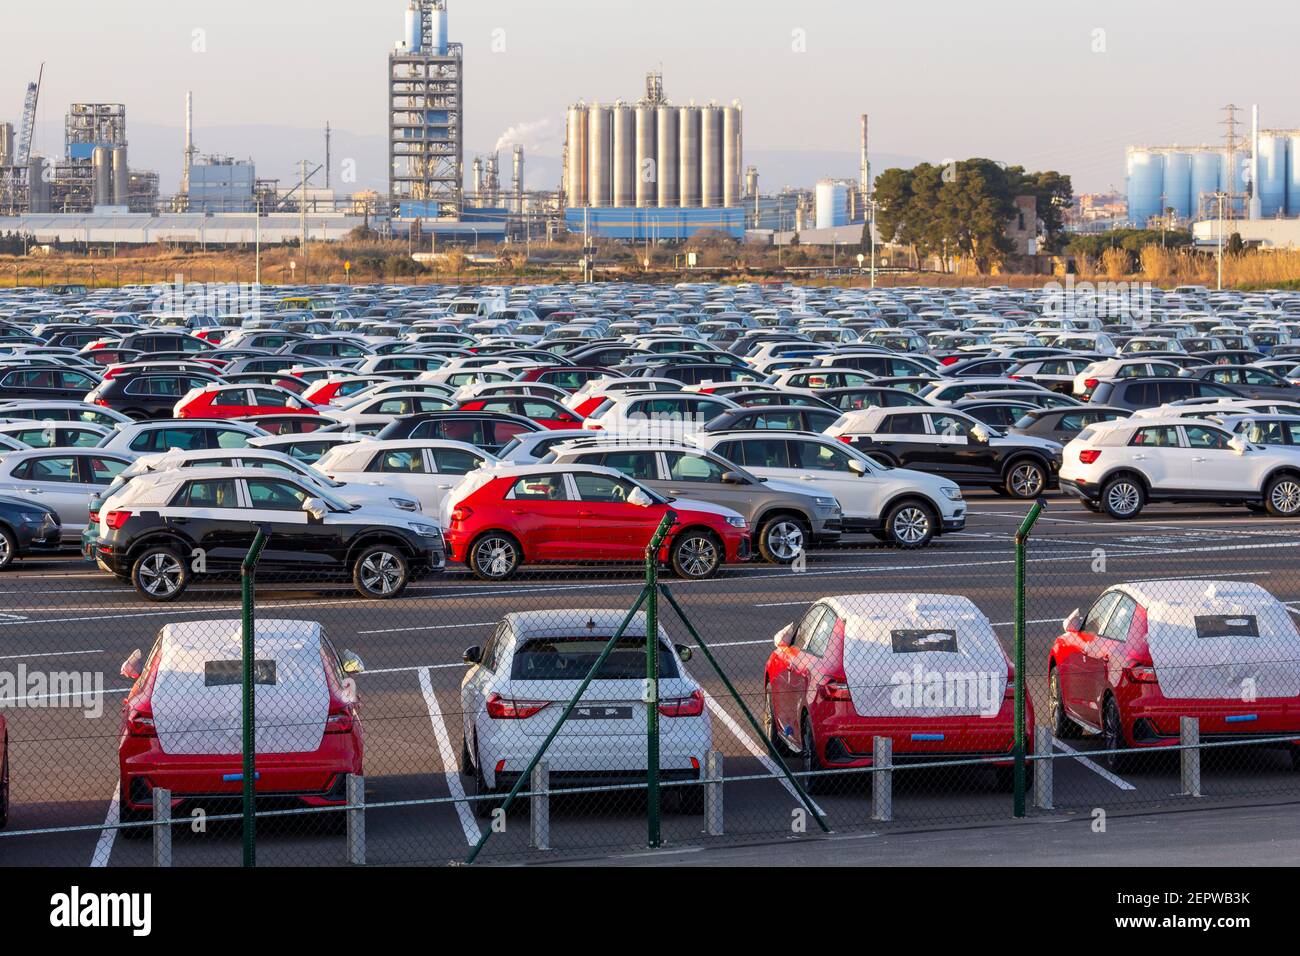 Importación de coches nuevos para la venta en un estacionamiento, industria del automóvil Foto de stock